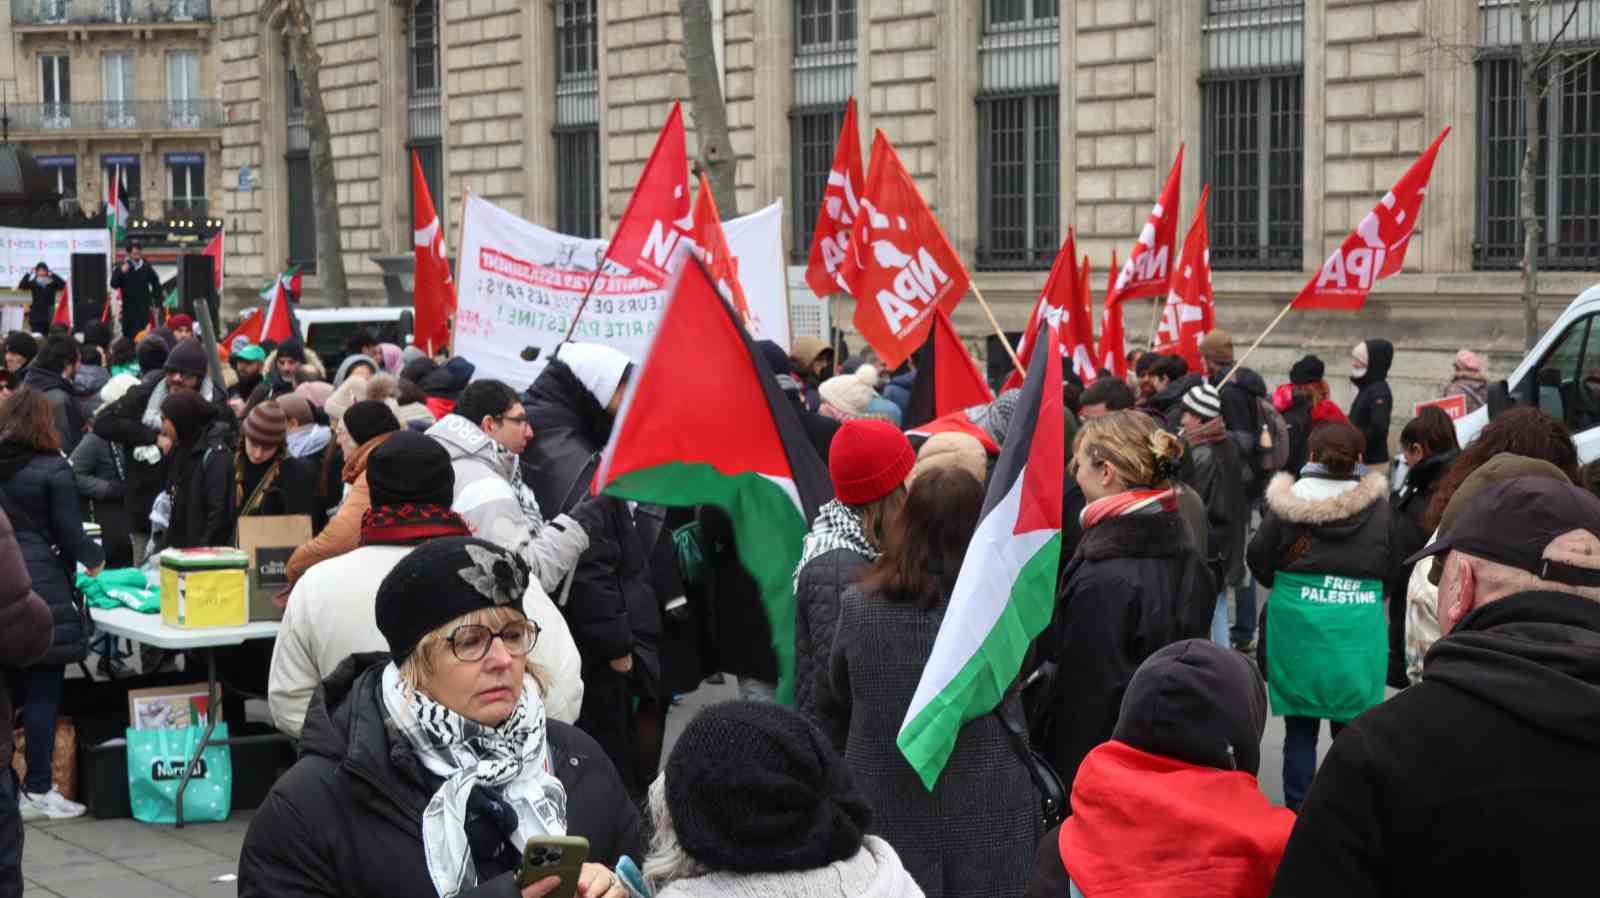 Filistinli grup, Paris’ten Avrupa Konseyi’ne yürüyüş başlattı: İşte detaylar!